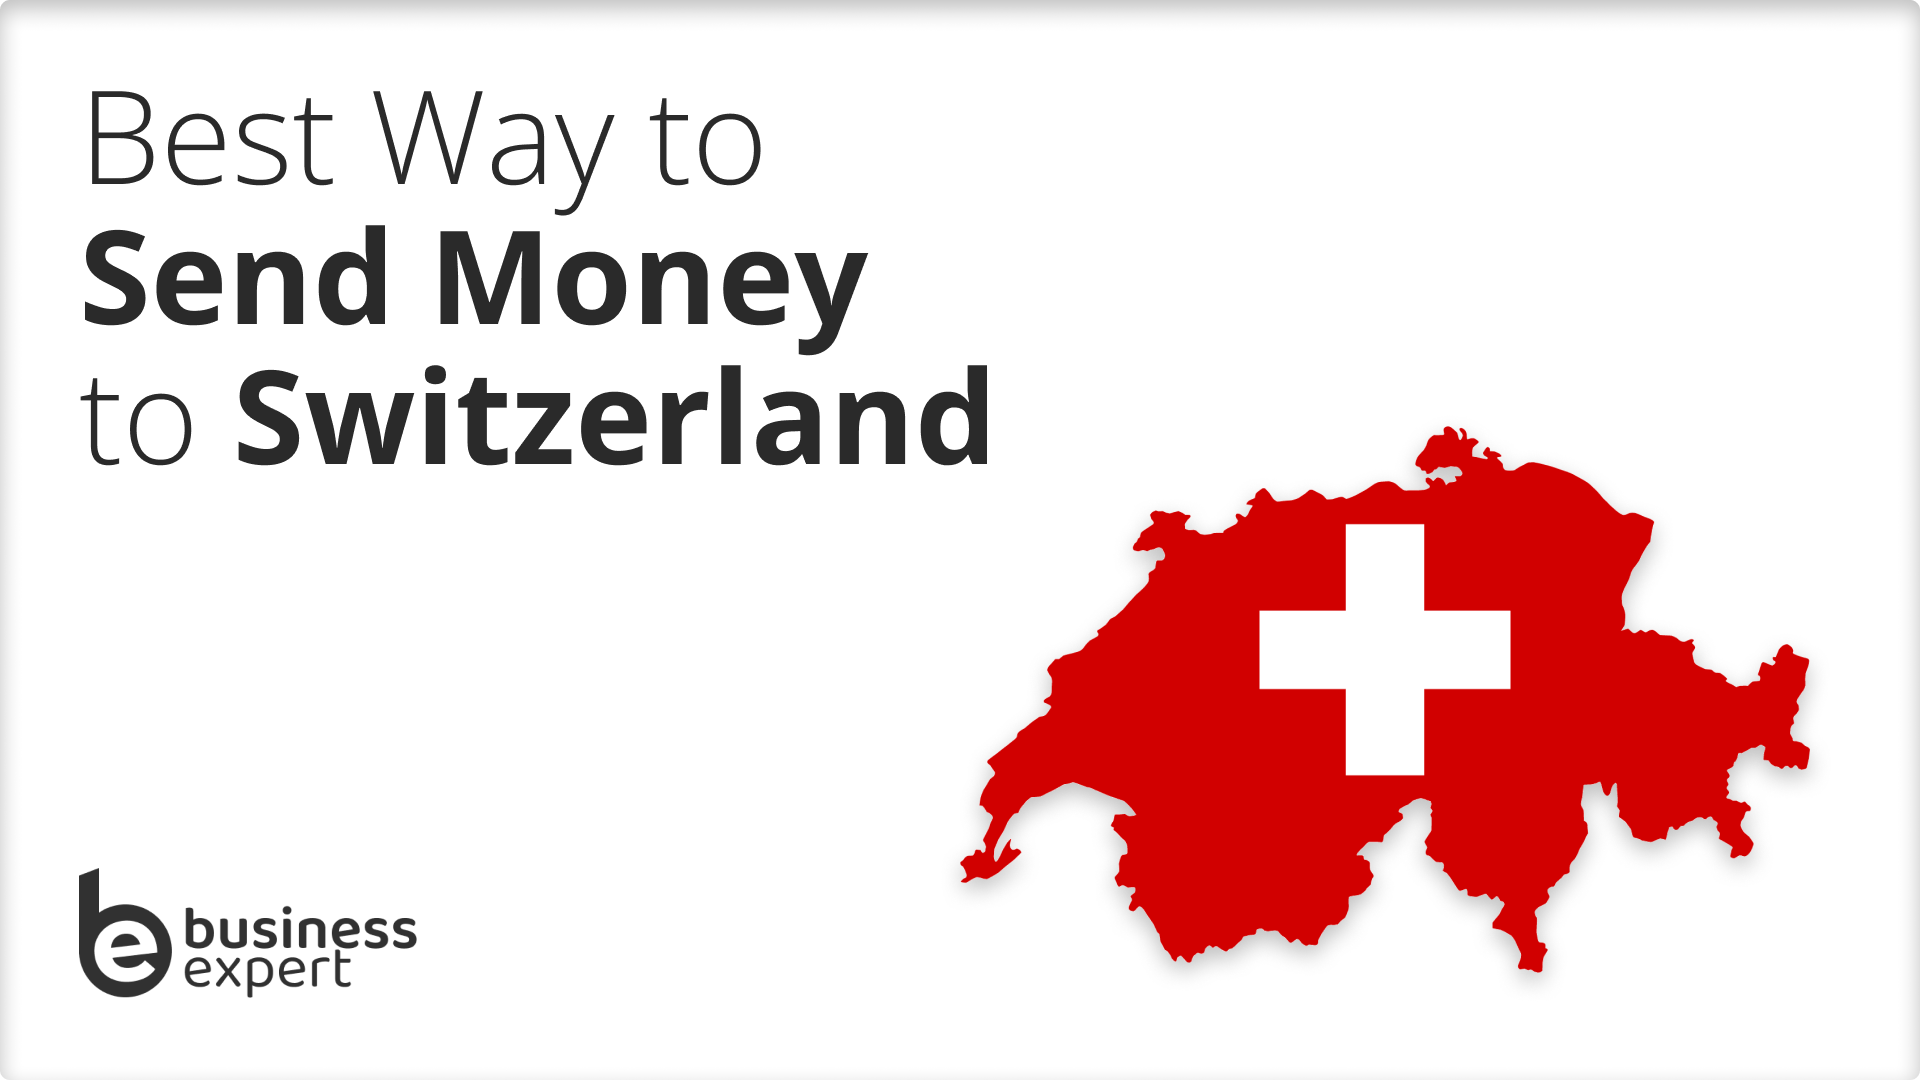 Send Money to Switzerland
